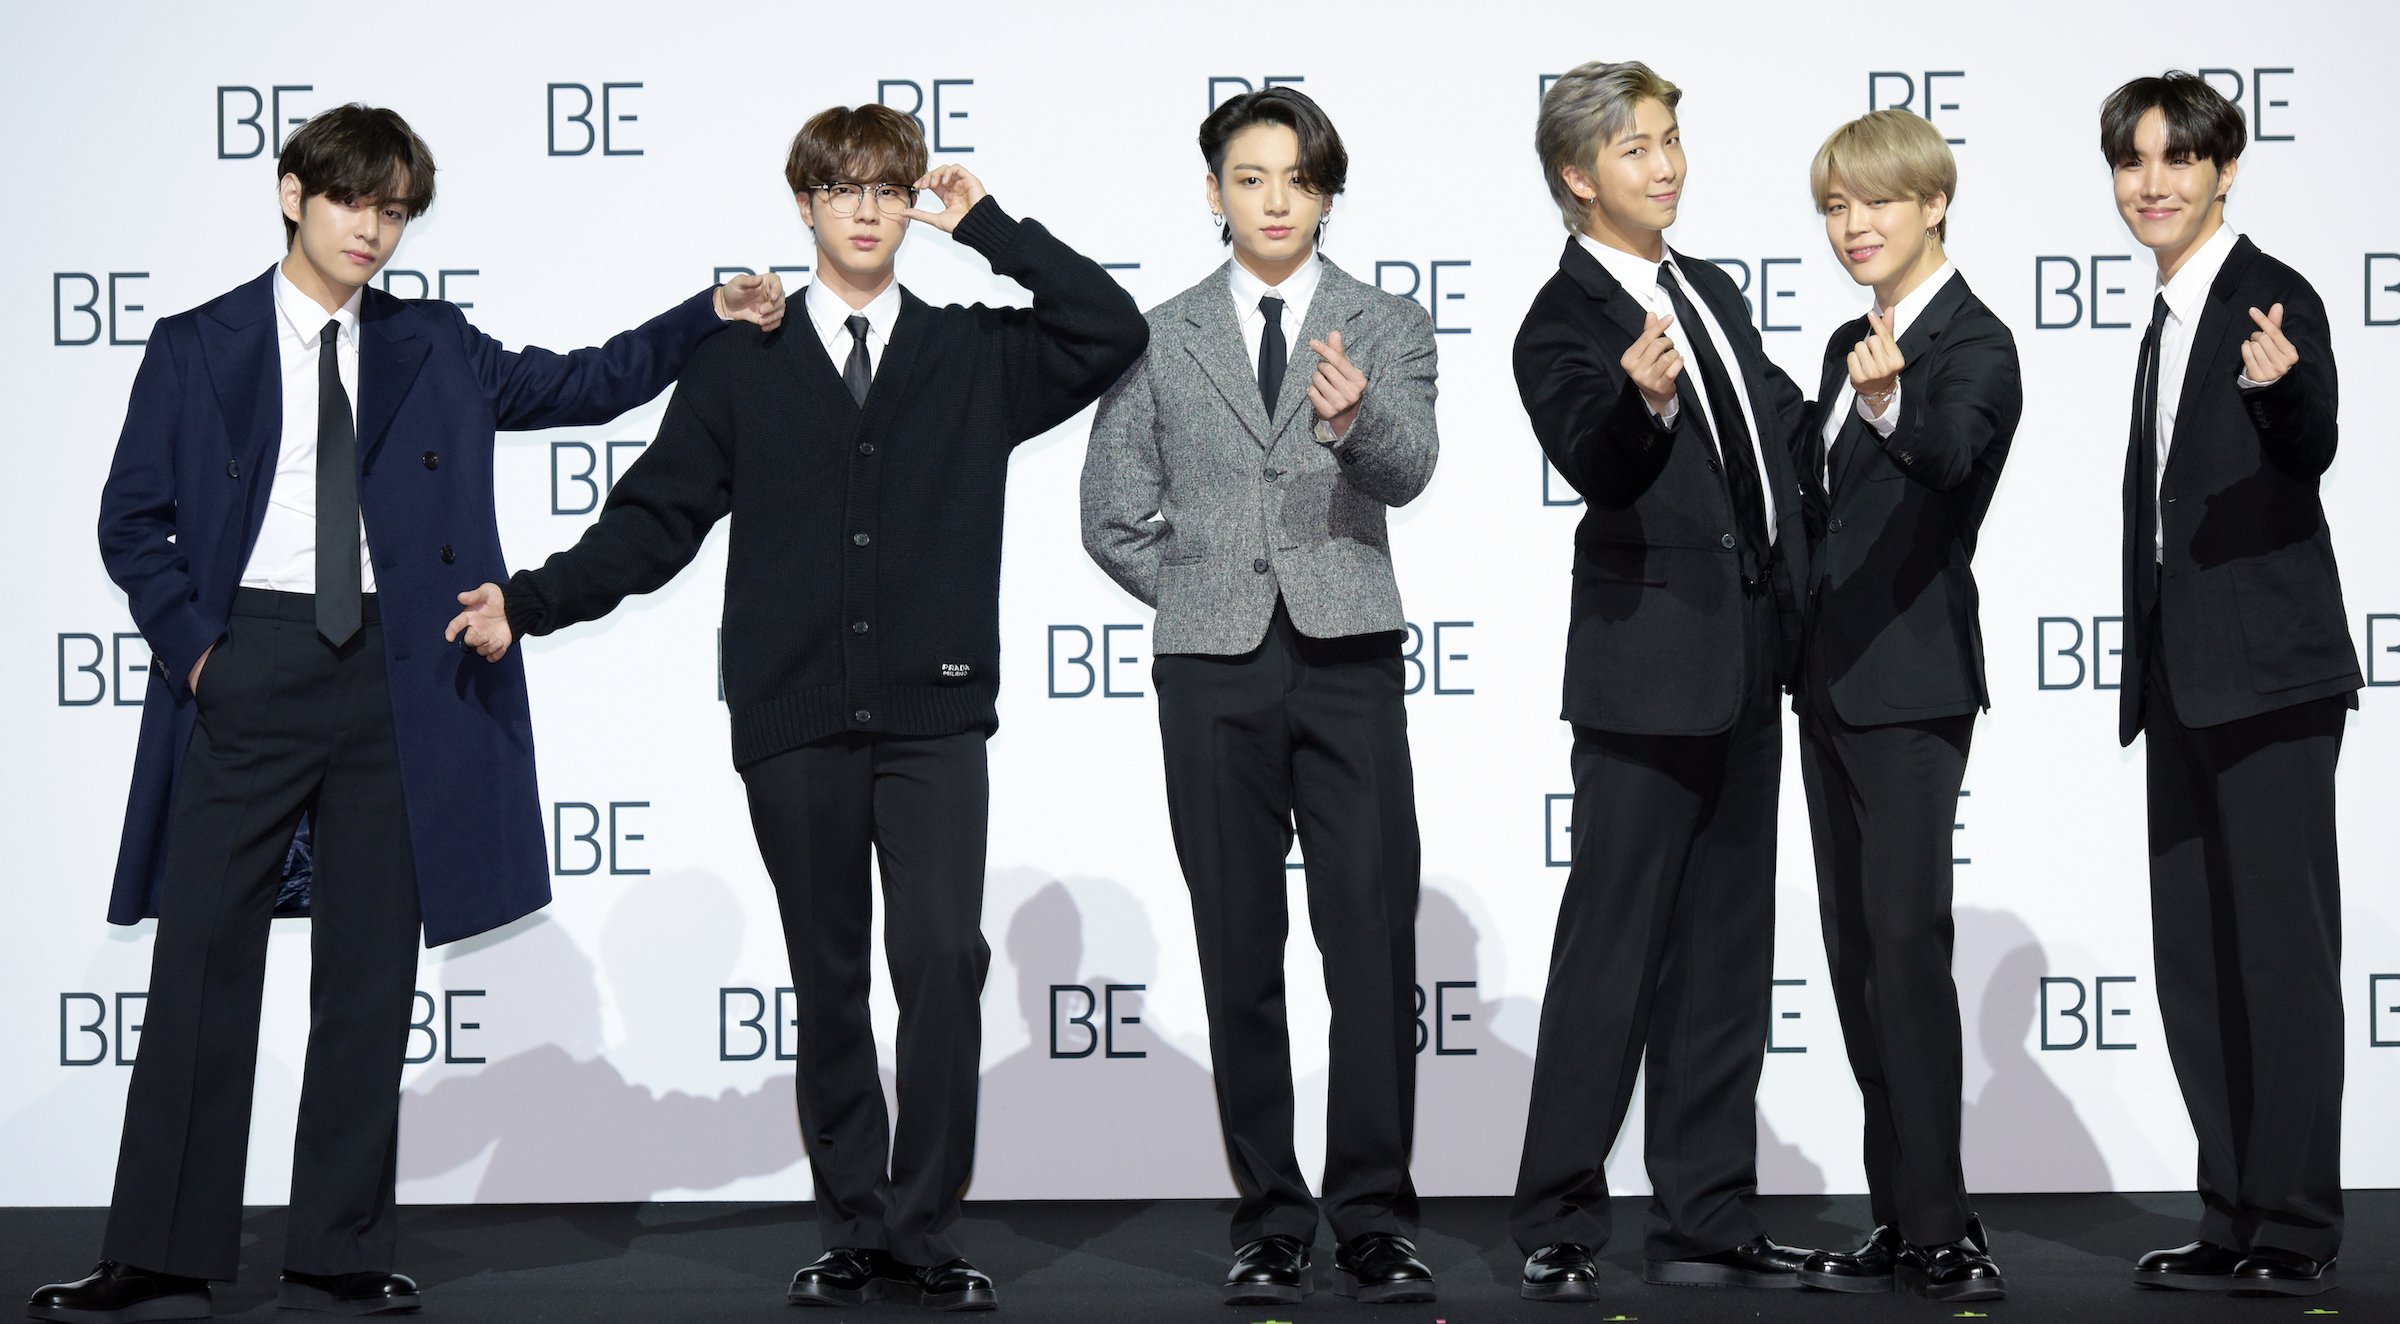 BTS members Jin, Jungkook, Jimin, RM, V, and J-Hope